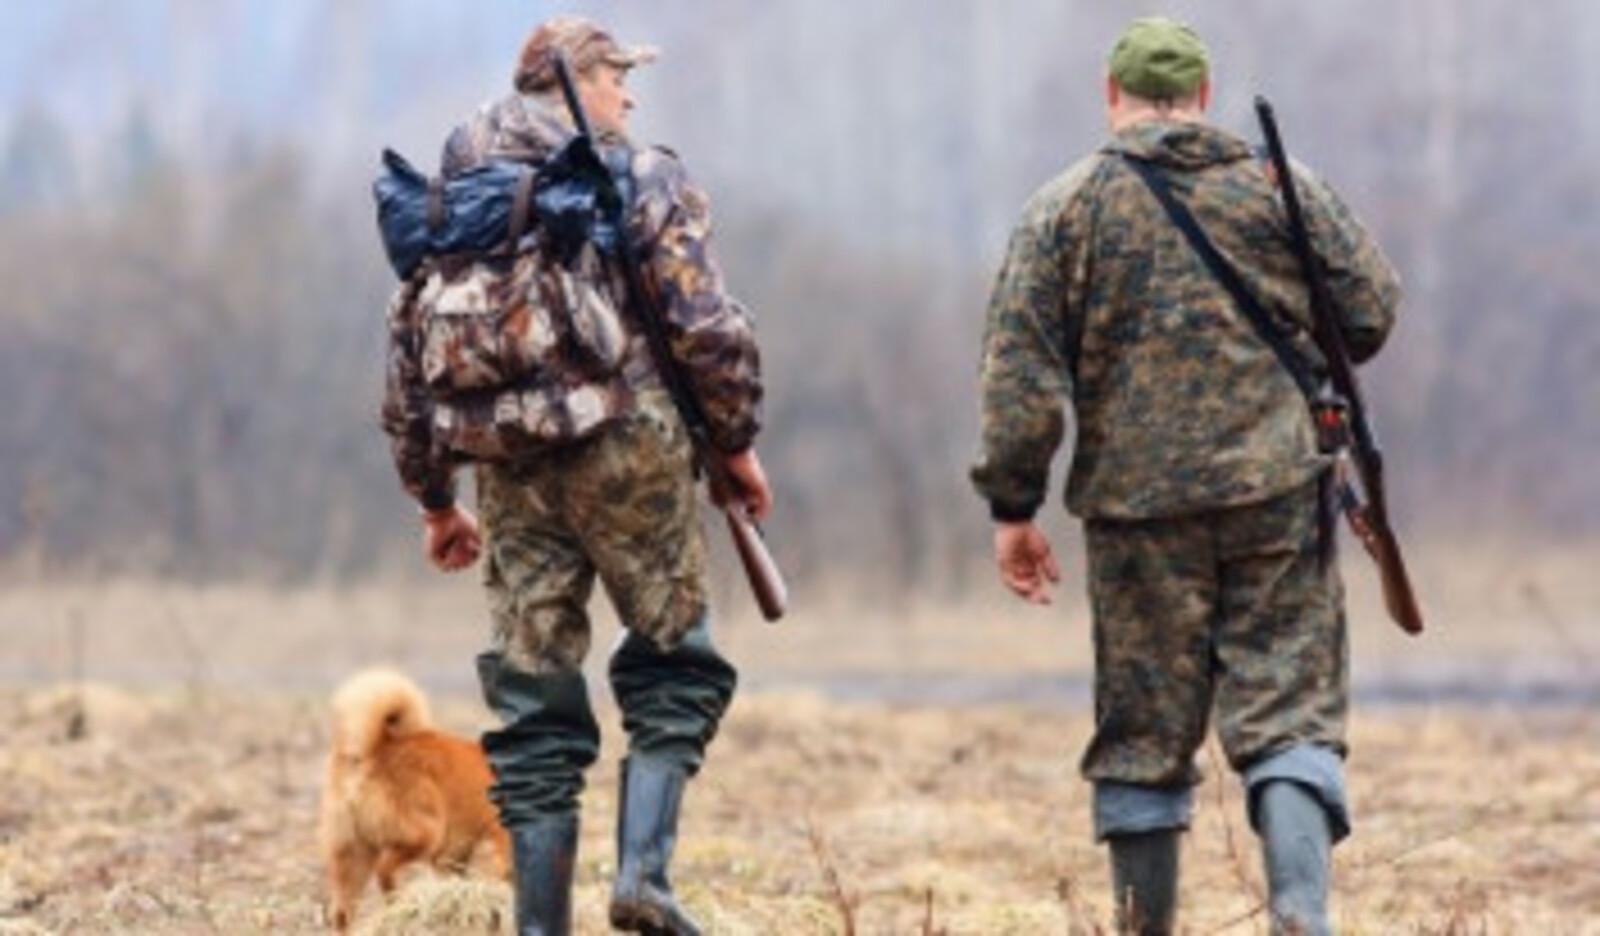 Глеб Егоров: «Каждый охотник всегда должен помнить правила охоты и соблюдать их»